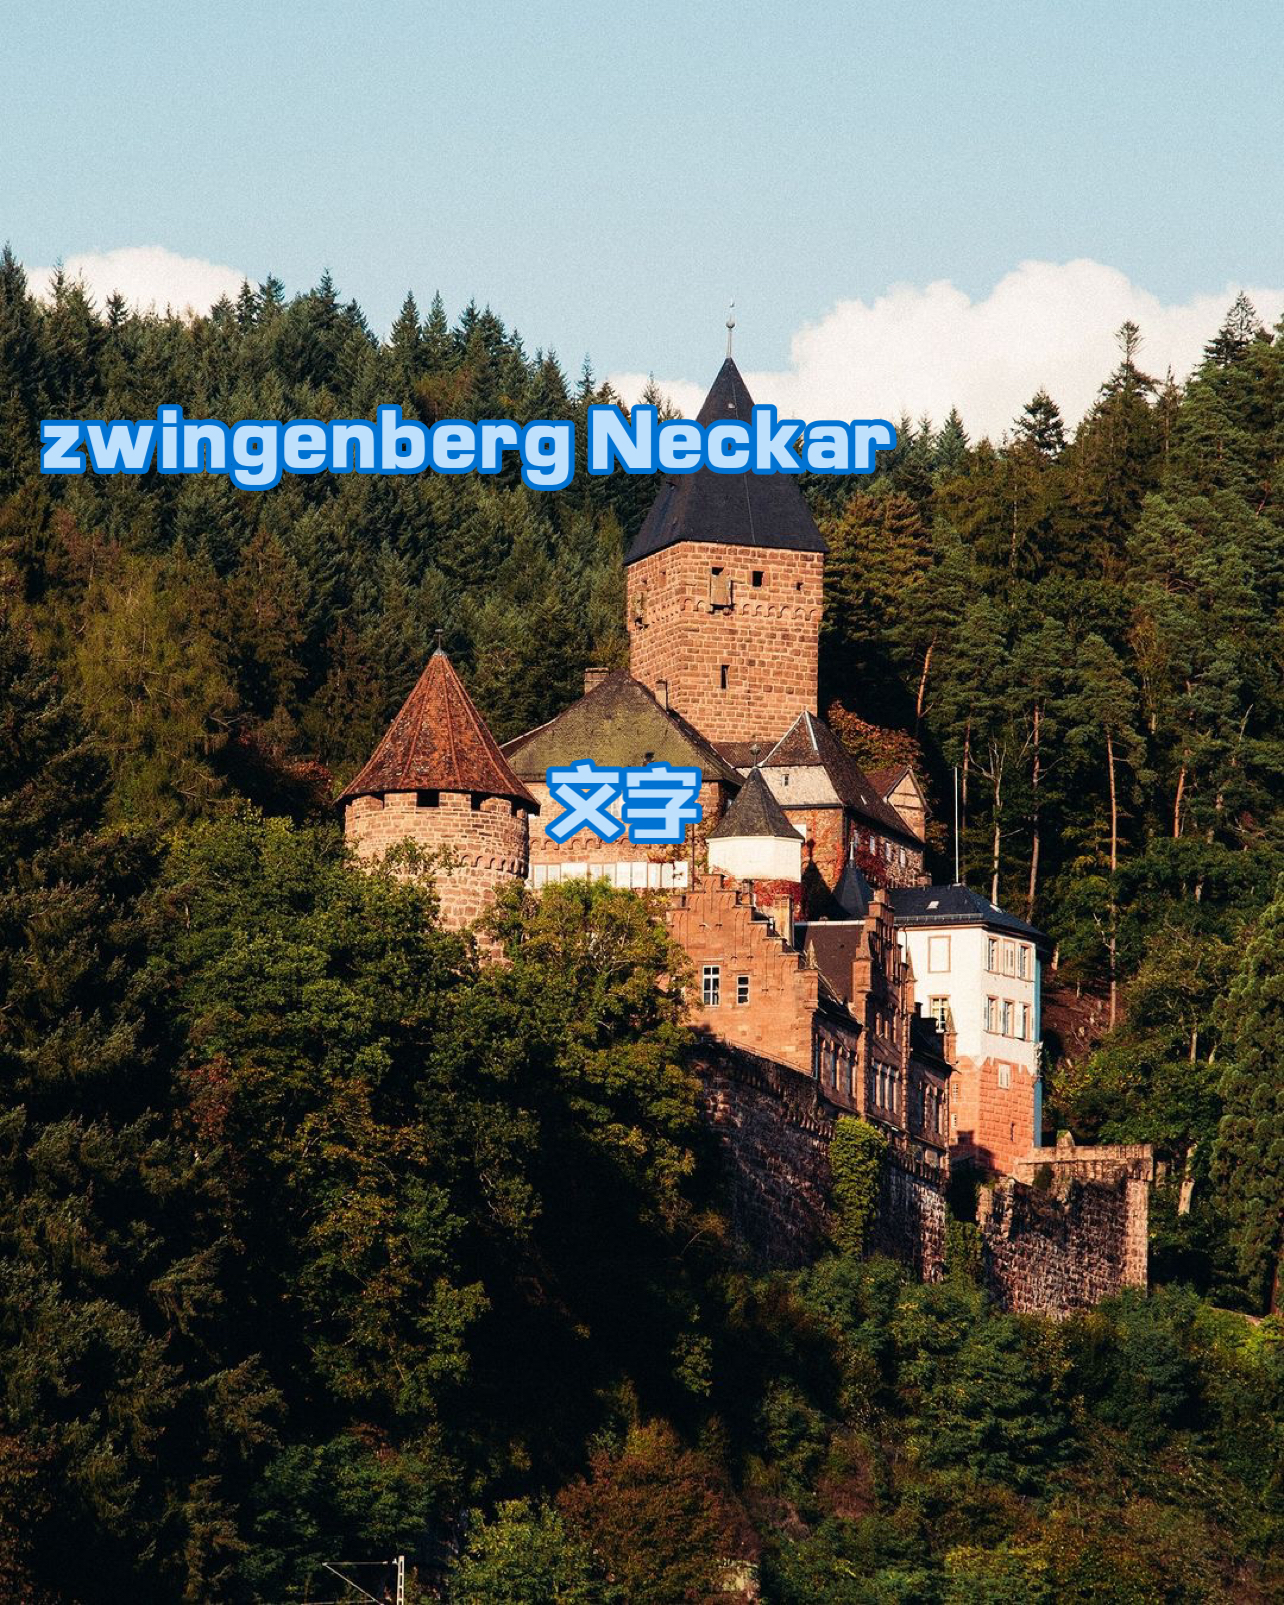 Zwingenberg Neckar